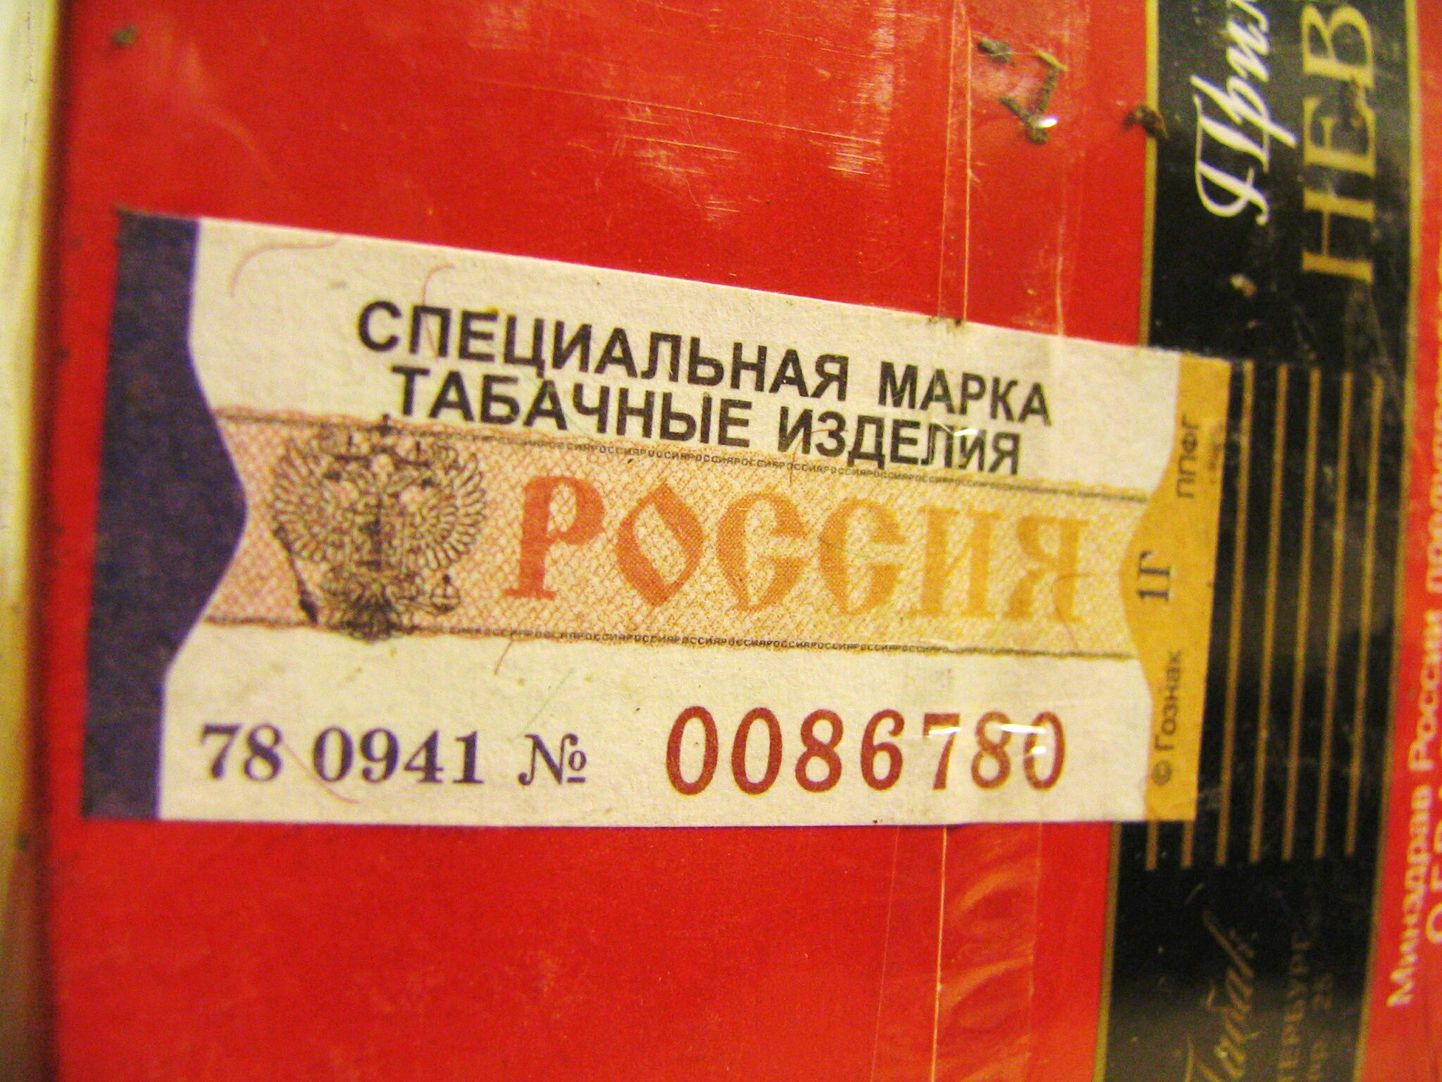 Vene maksumärgiga suitsupakk.